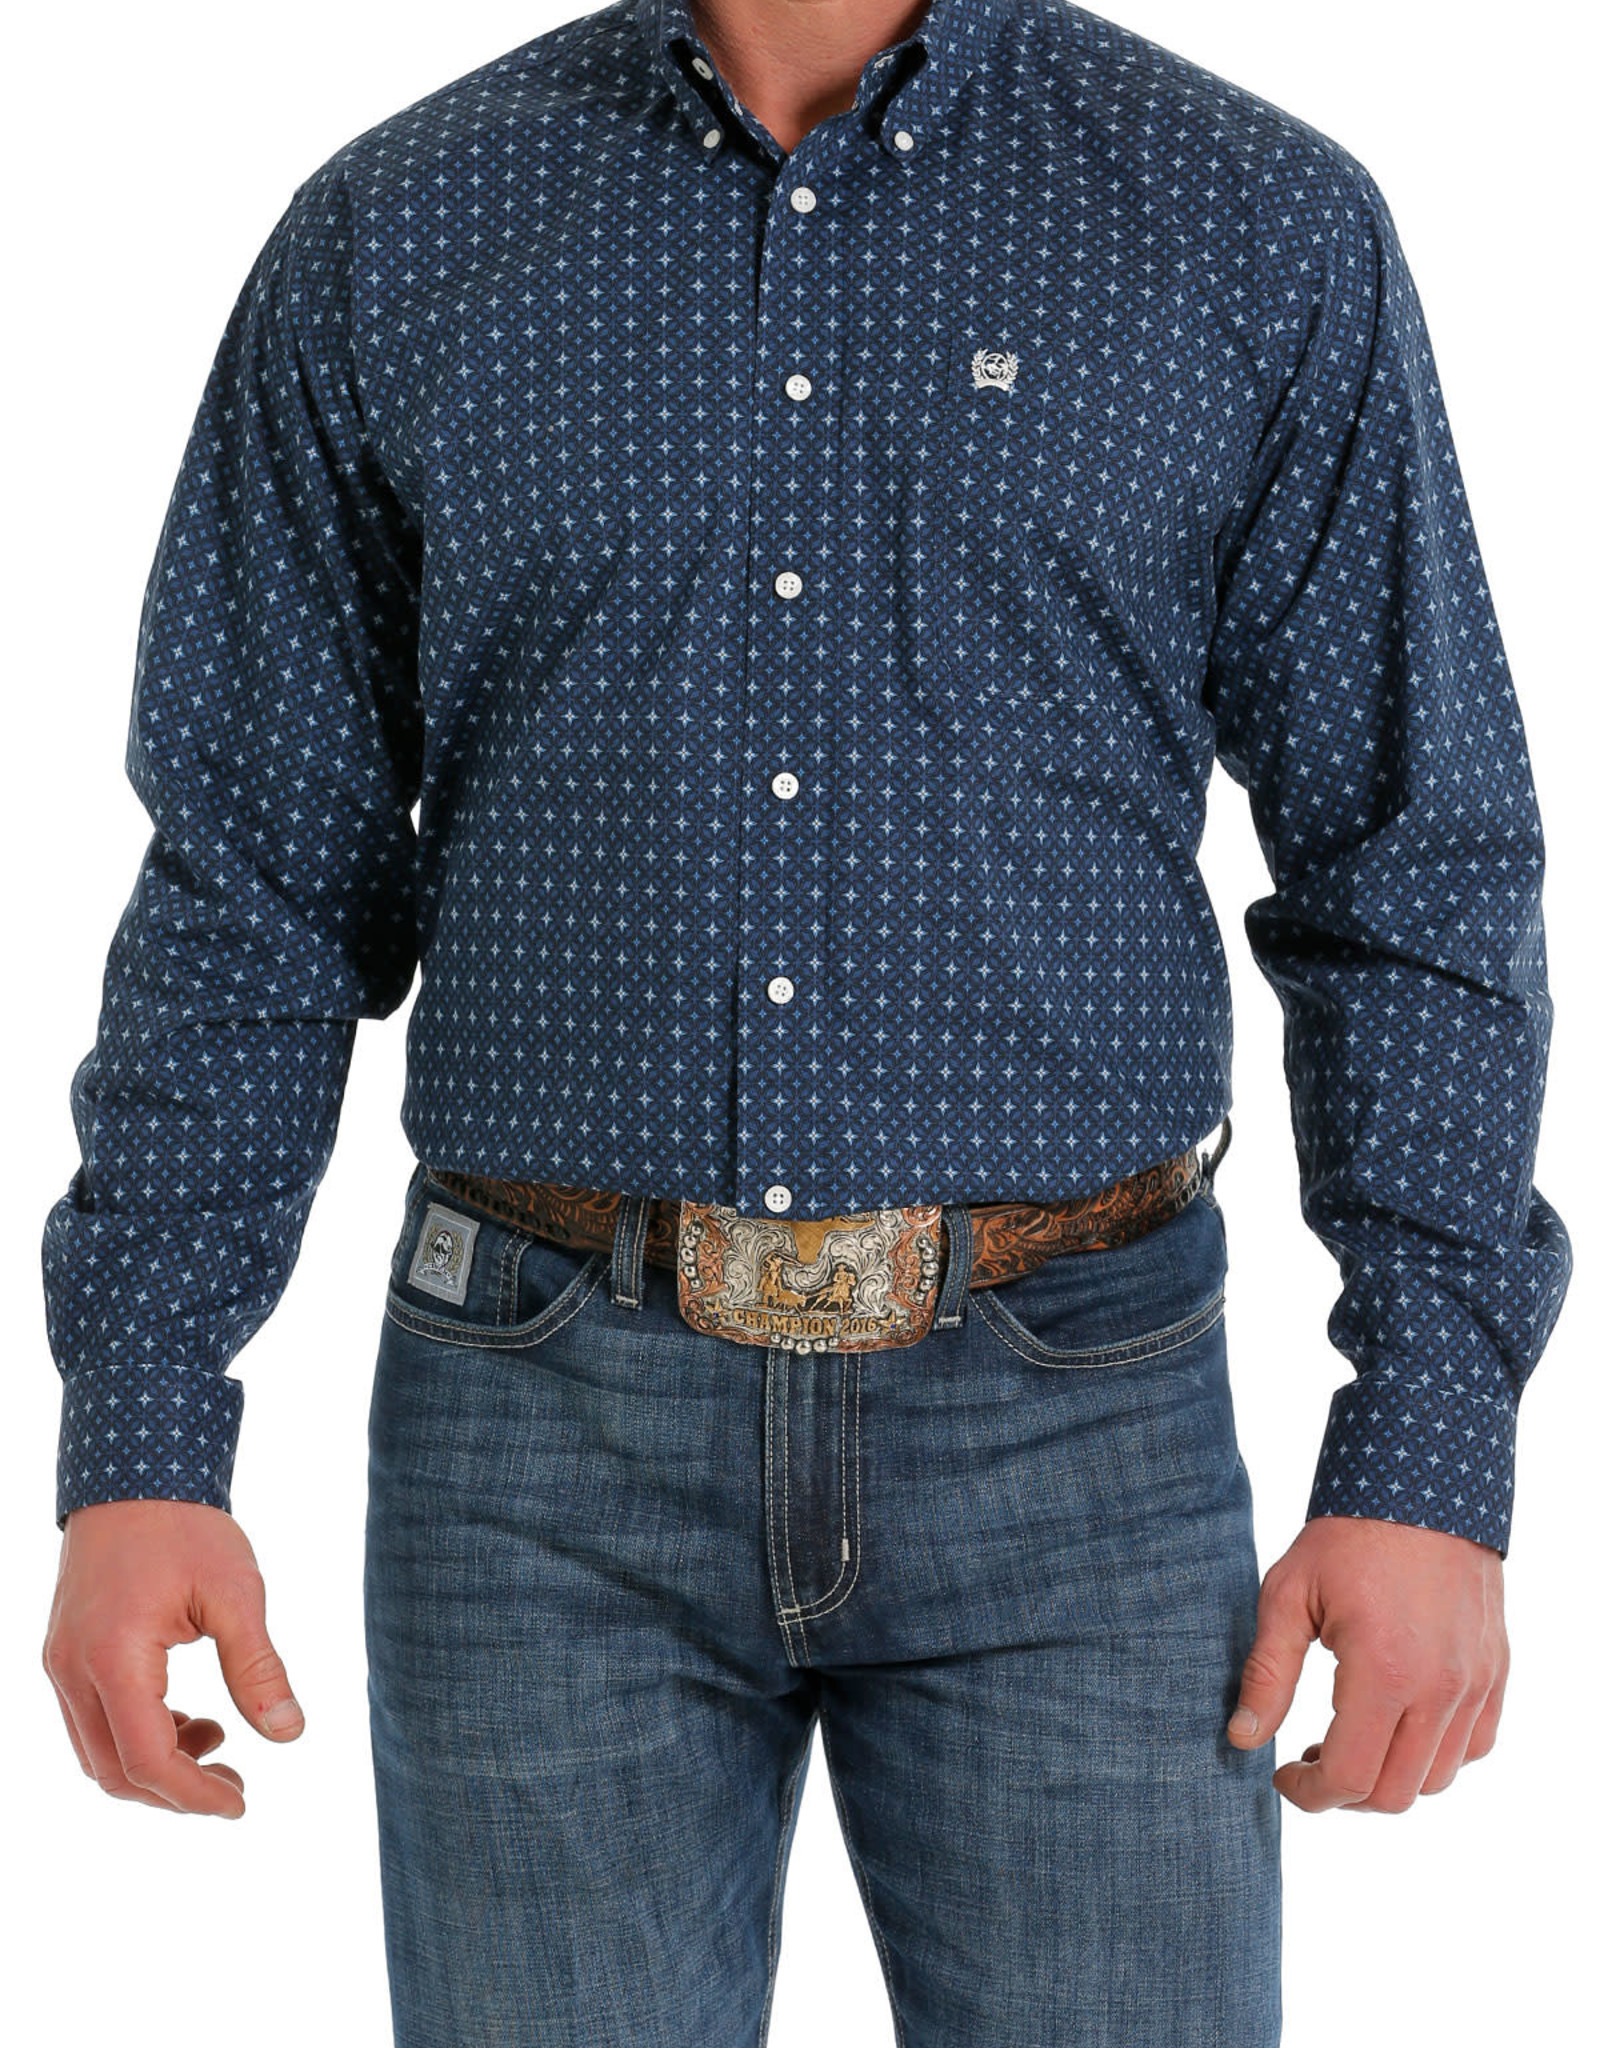 Cinch Boy's Navy Blue Long Sleeve Shirt – Rockin R Western Store LLC